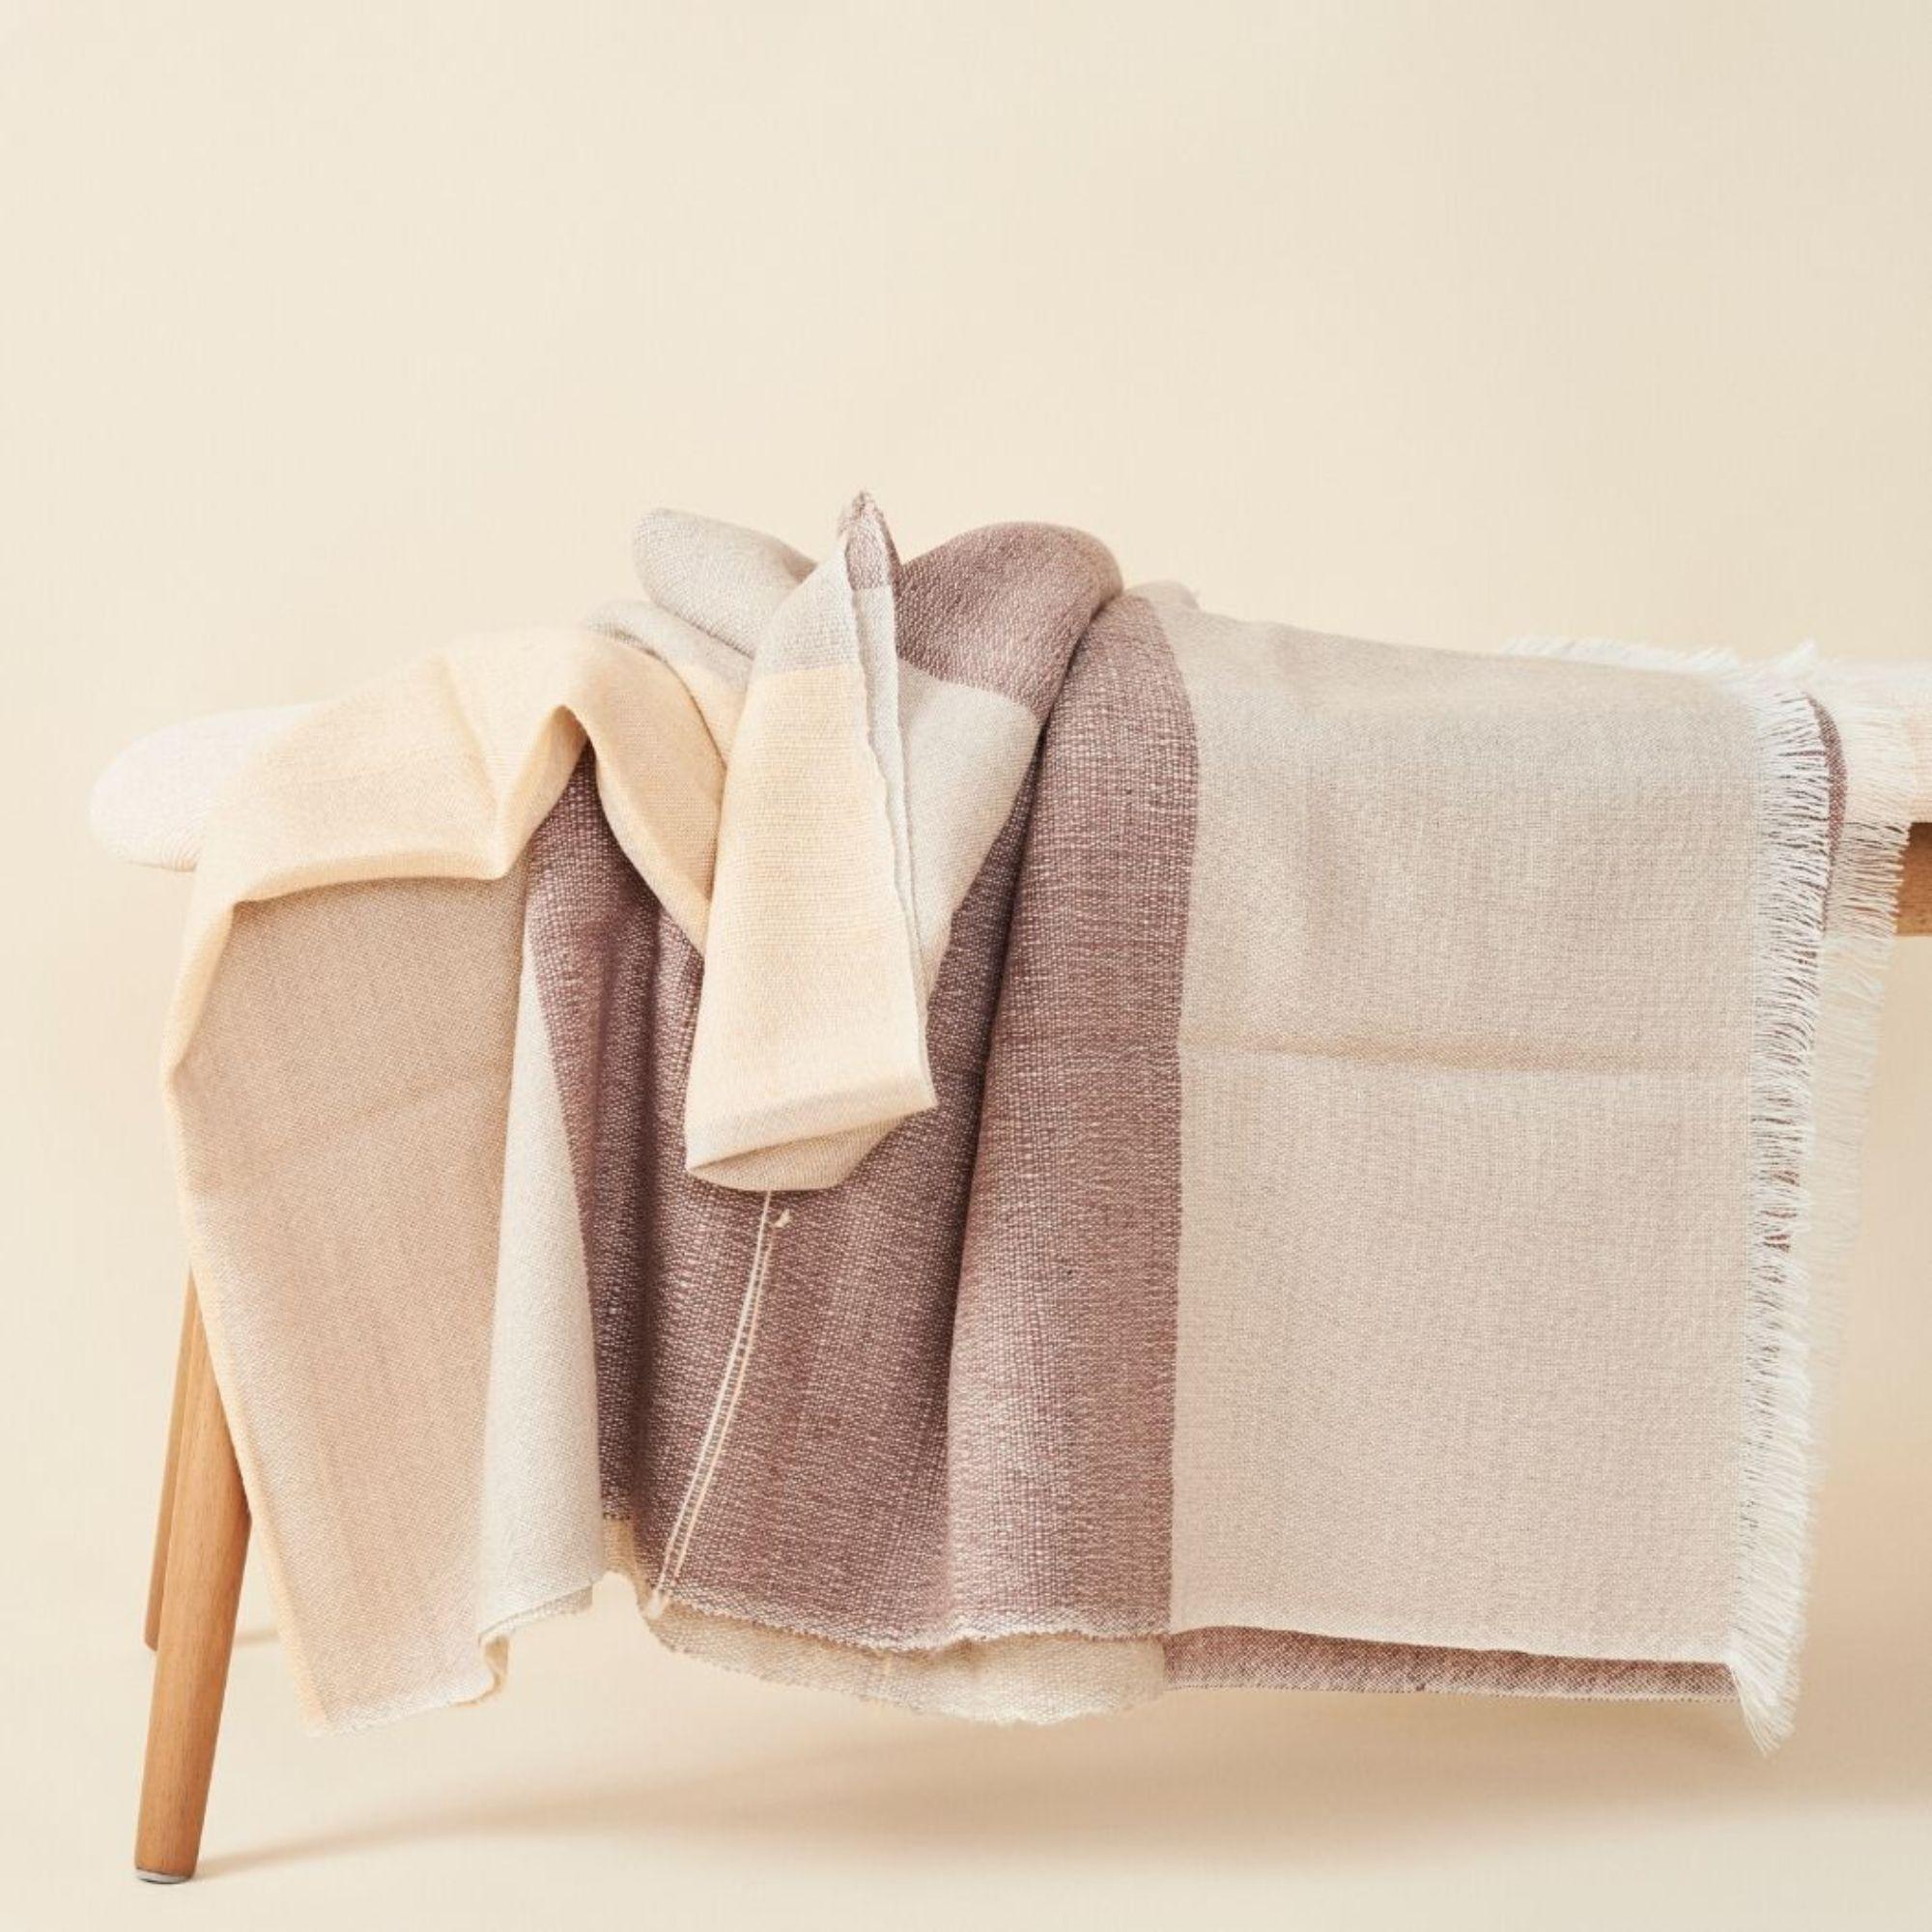 Die mit viel Liebe zum Detail handgewebte Decke Cino verbindet auf luxuriöse Weise den Wert des Erbes mit hochwertiger Handwerkskunst.  Das Design aus hochwertigem Merinogarn besteht aus farbigen Blockstreifen in neutralen Creme-, Beige- und